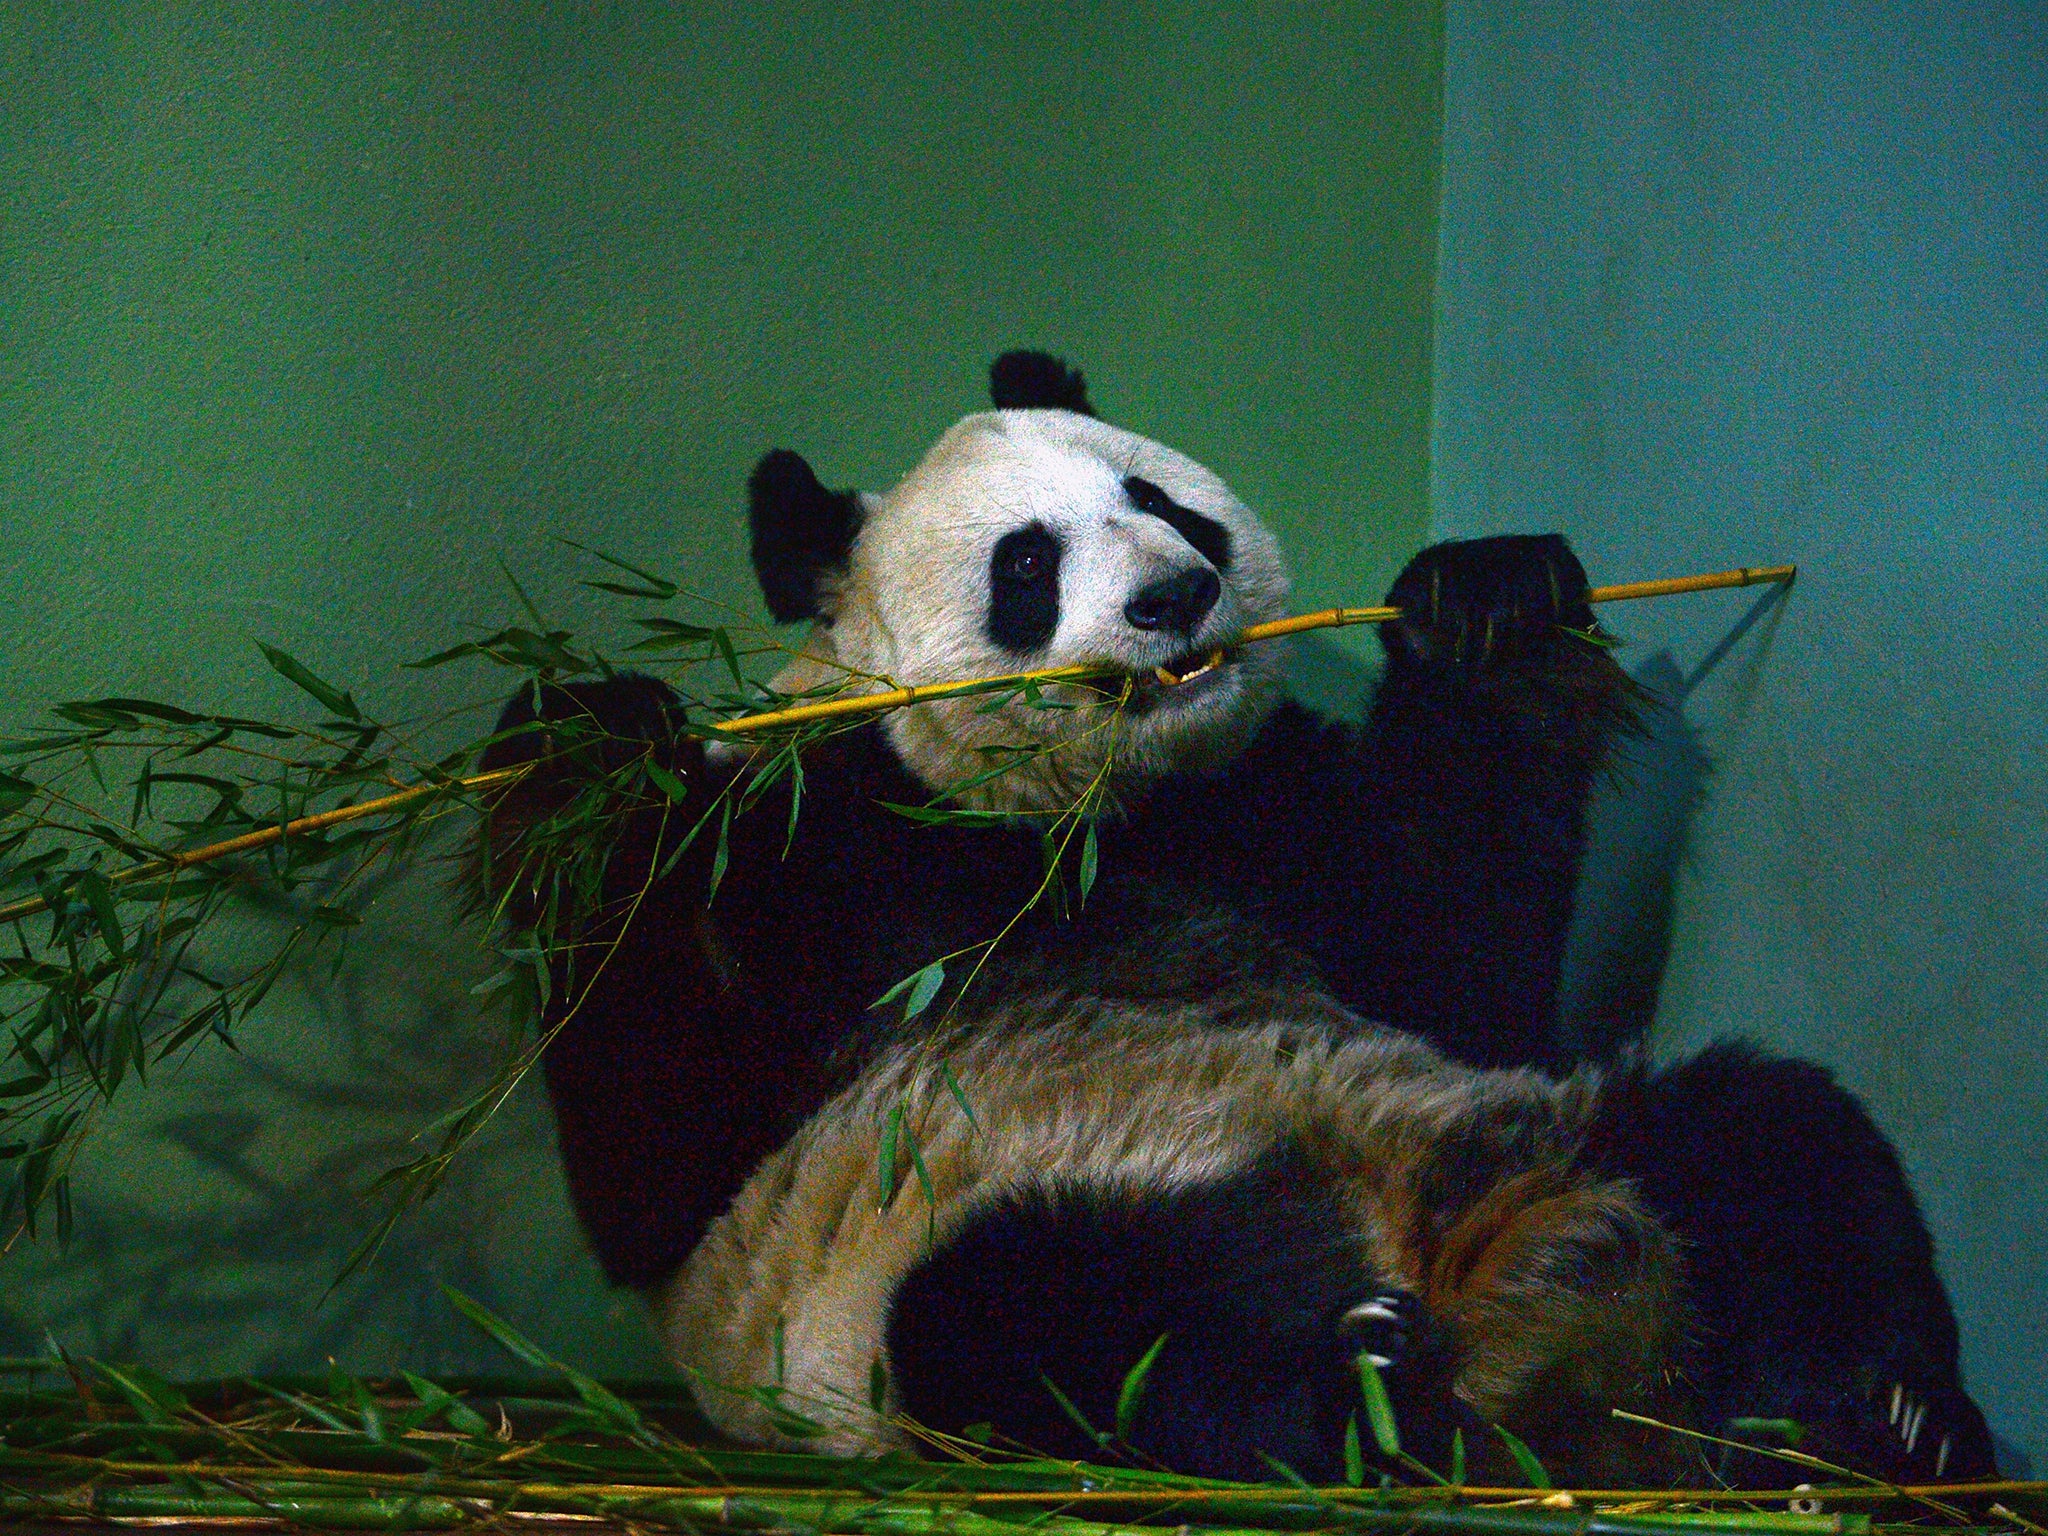 Tian Tian the female panda at Edinburgh zoo sits inside her enclosure